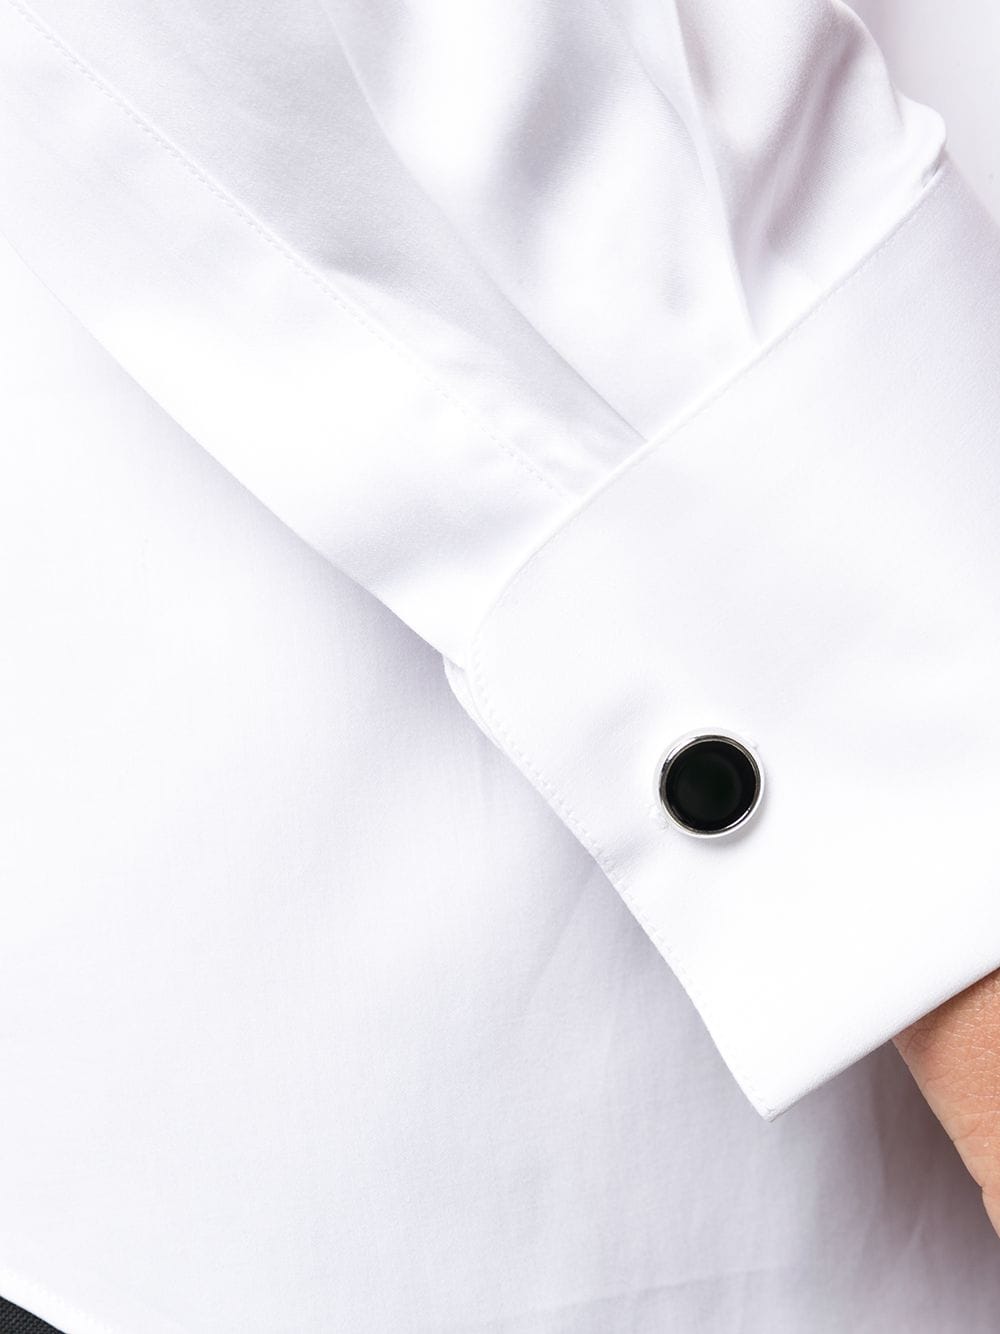 Chemise blanche avec boutons de manchette